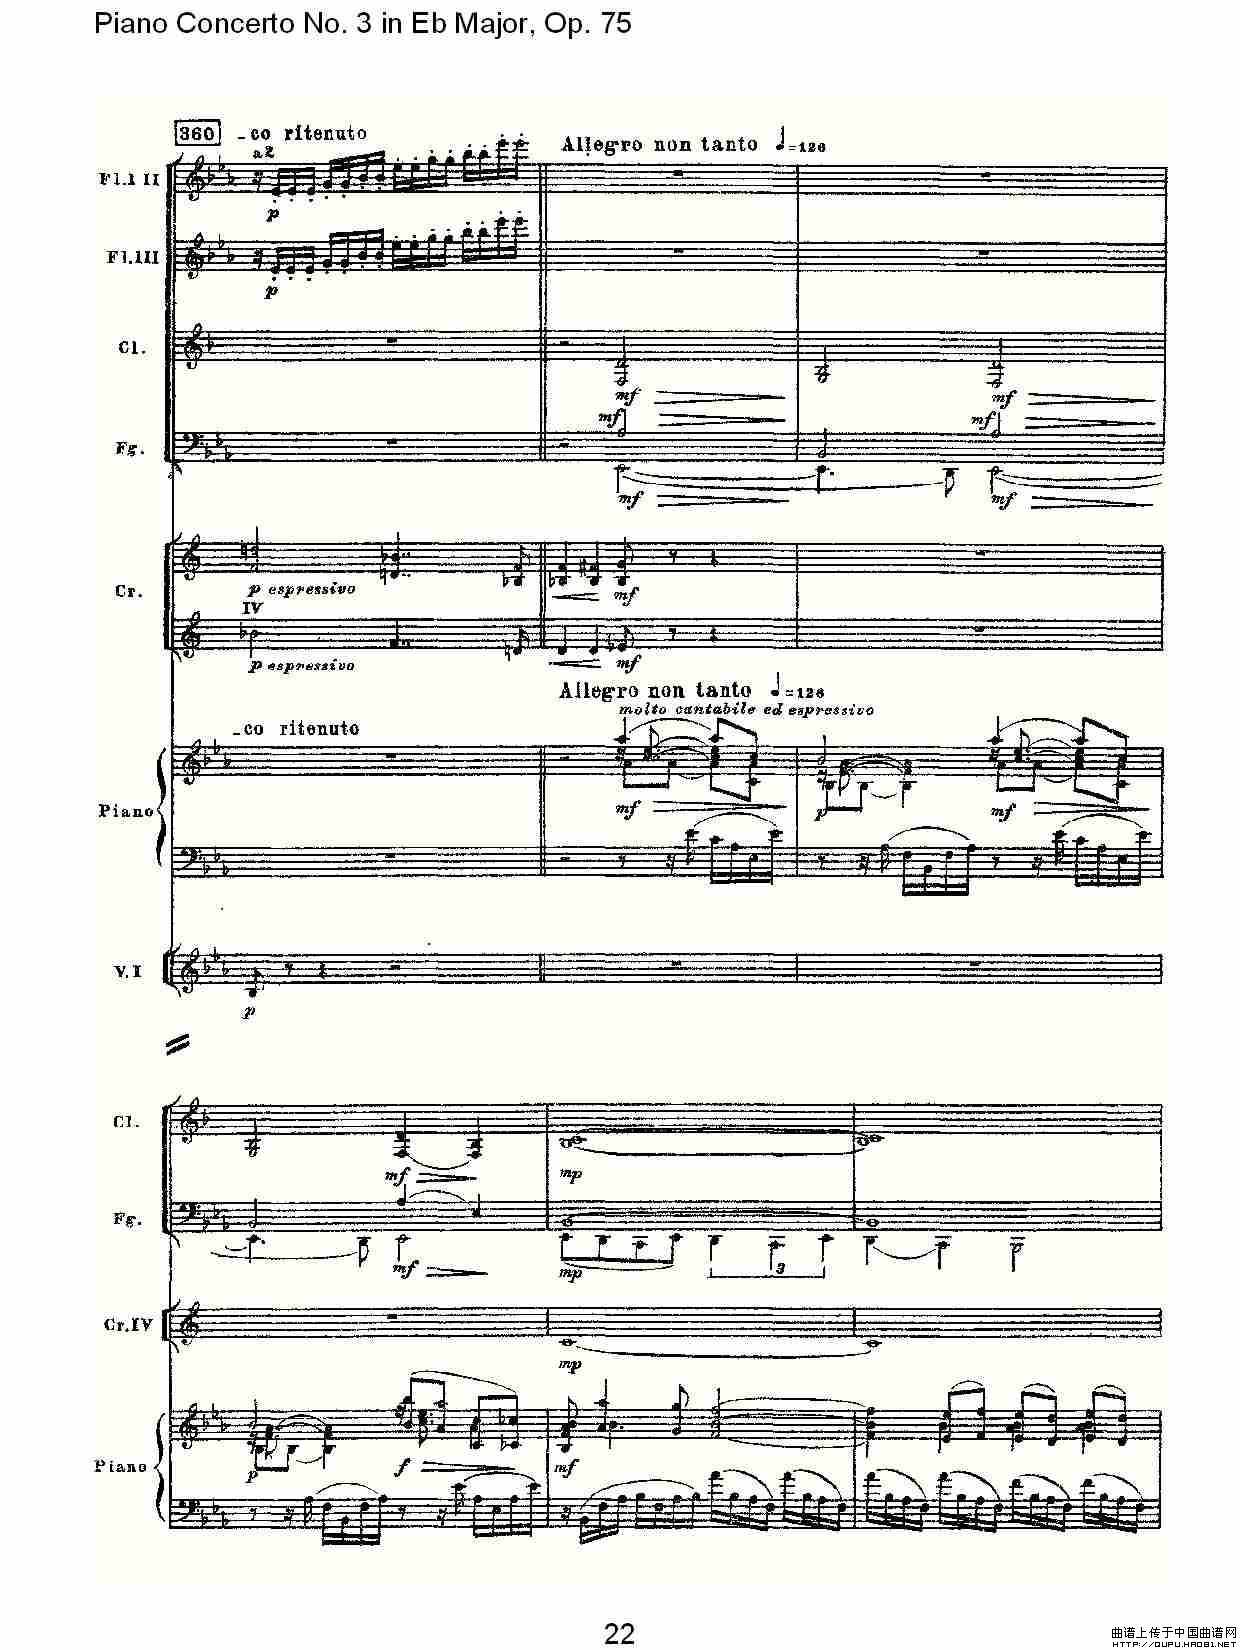 Piano Concerto No.3 in Eb Major, Op.75（Eb大调第三钢琴协奏）(1)_原文件名：Piano Concerto No.3 in Eb Major, Op.7523.jpg